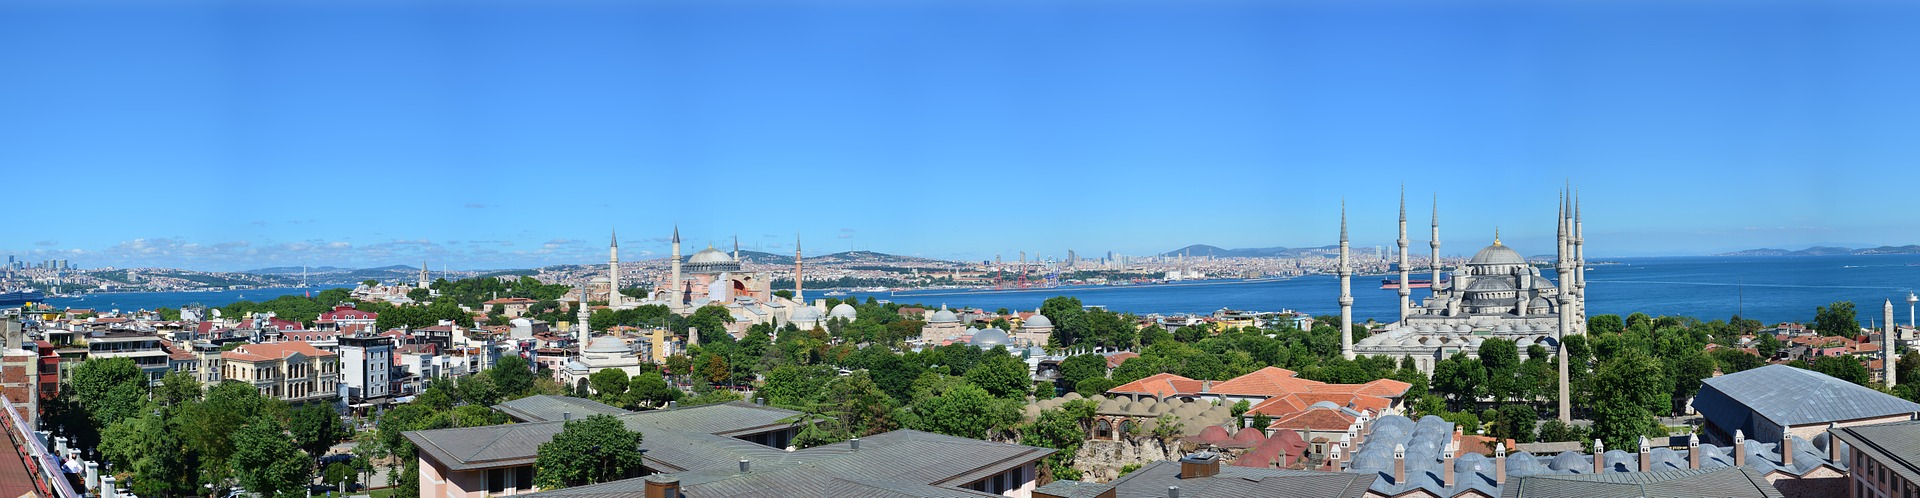 Istanbul Urlaub am Bosporus 5 Tage Türkei ab 165,00€